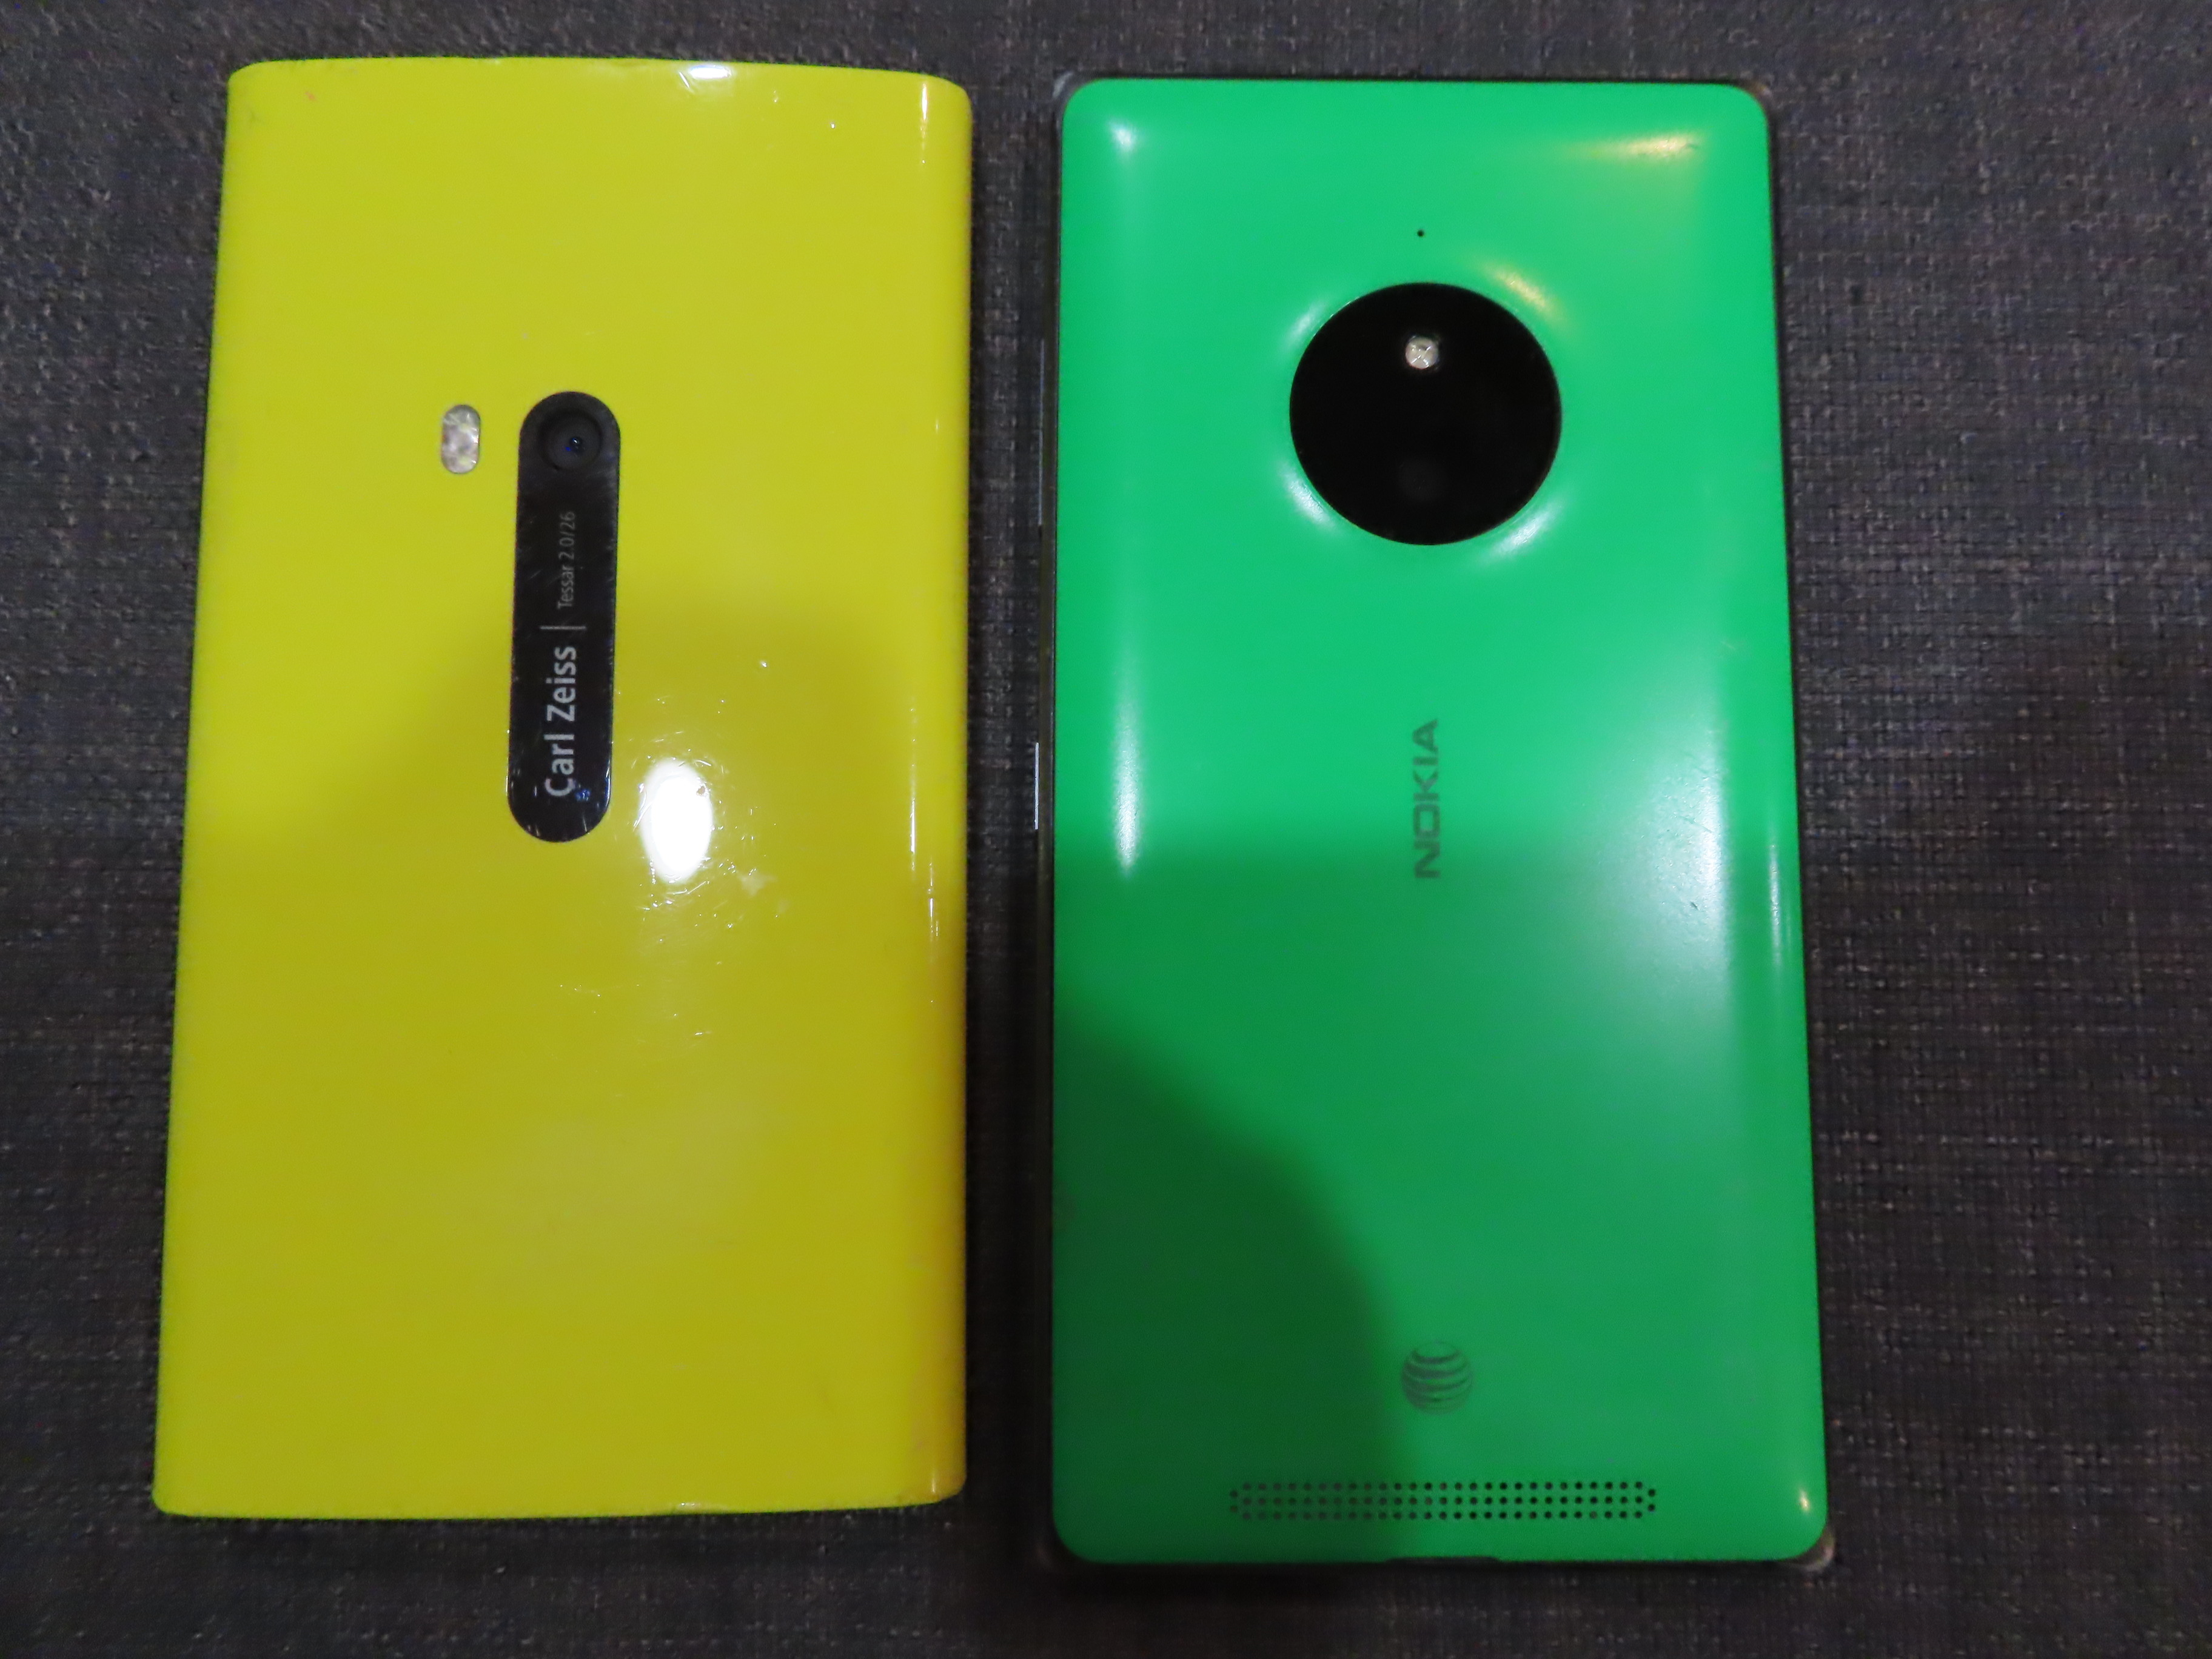 Two Nokia Lumia Windows Phones